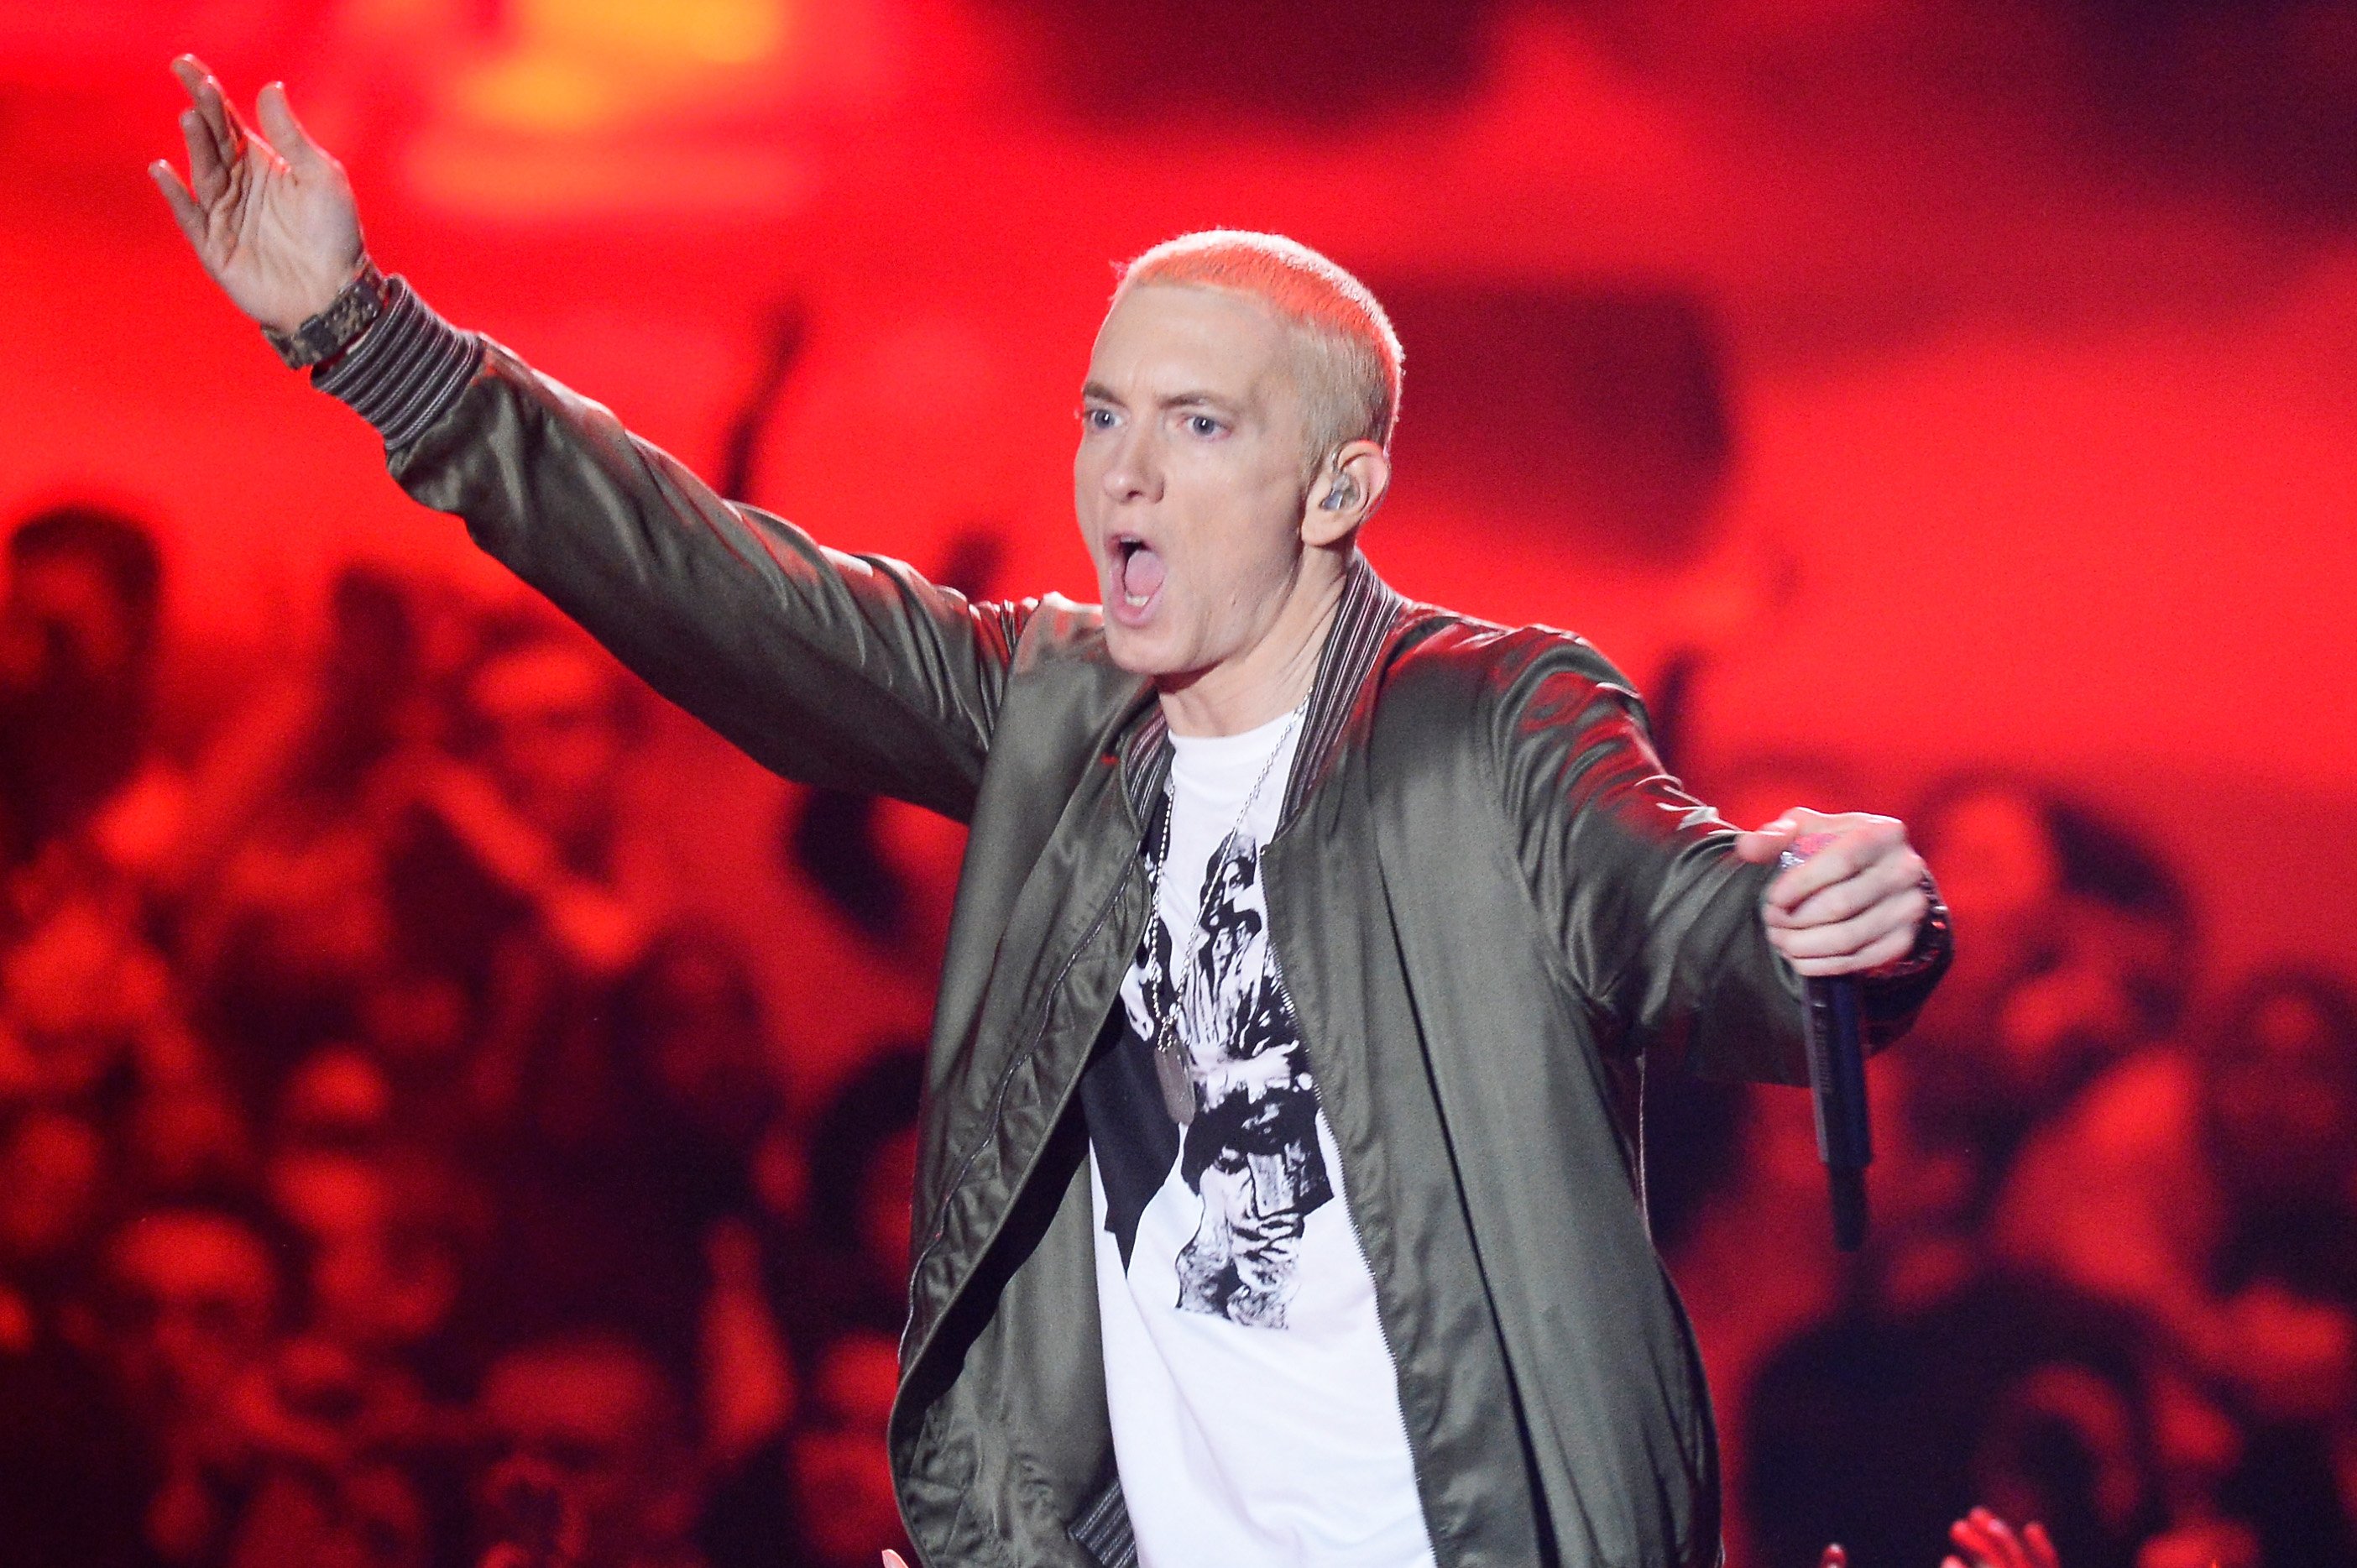 Eminem raising his left arm